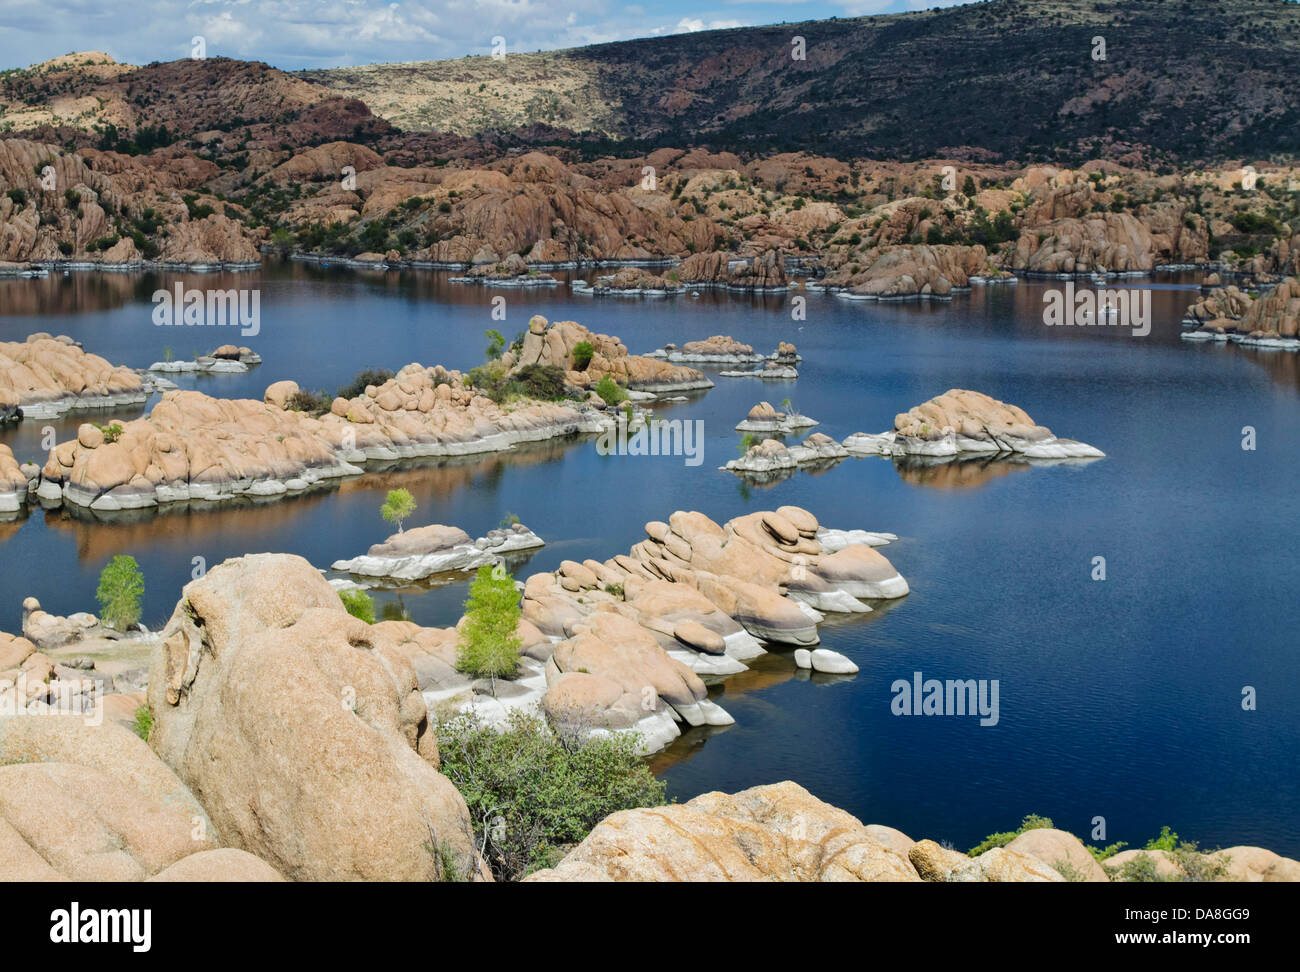 Les formations de roche rouge unique et l'eau d'un bleu profond, de Watson Lake, Arizona, créer une scène à couper le souffle. Près de Prescott, AZ Banque D'Images